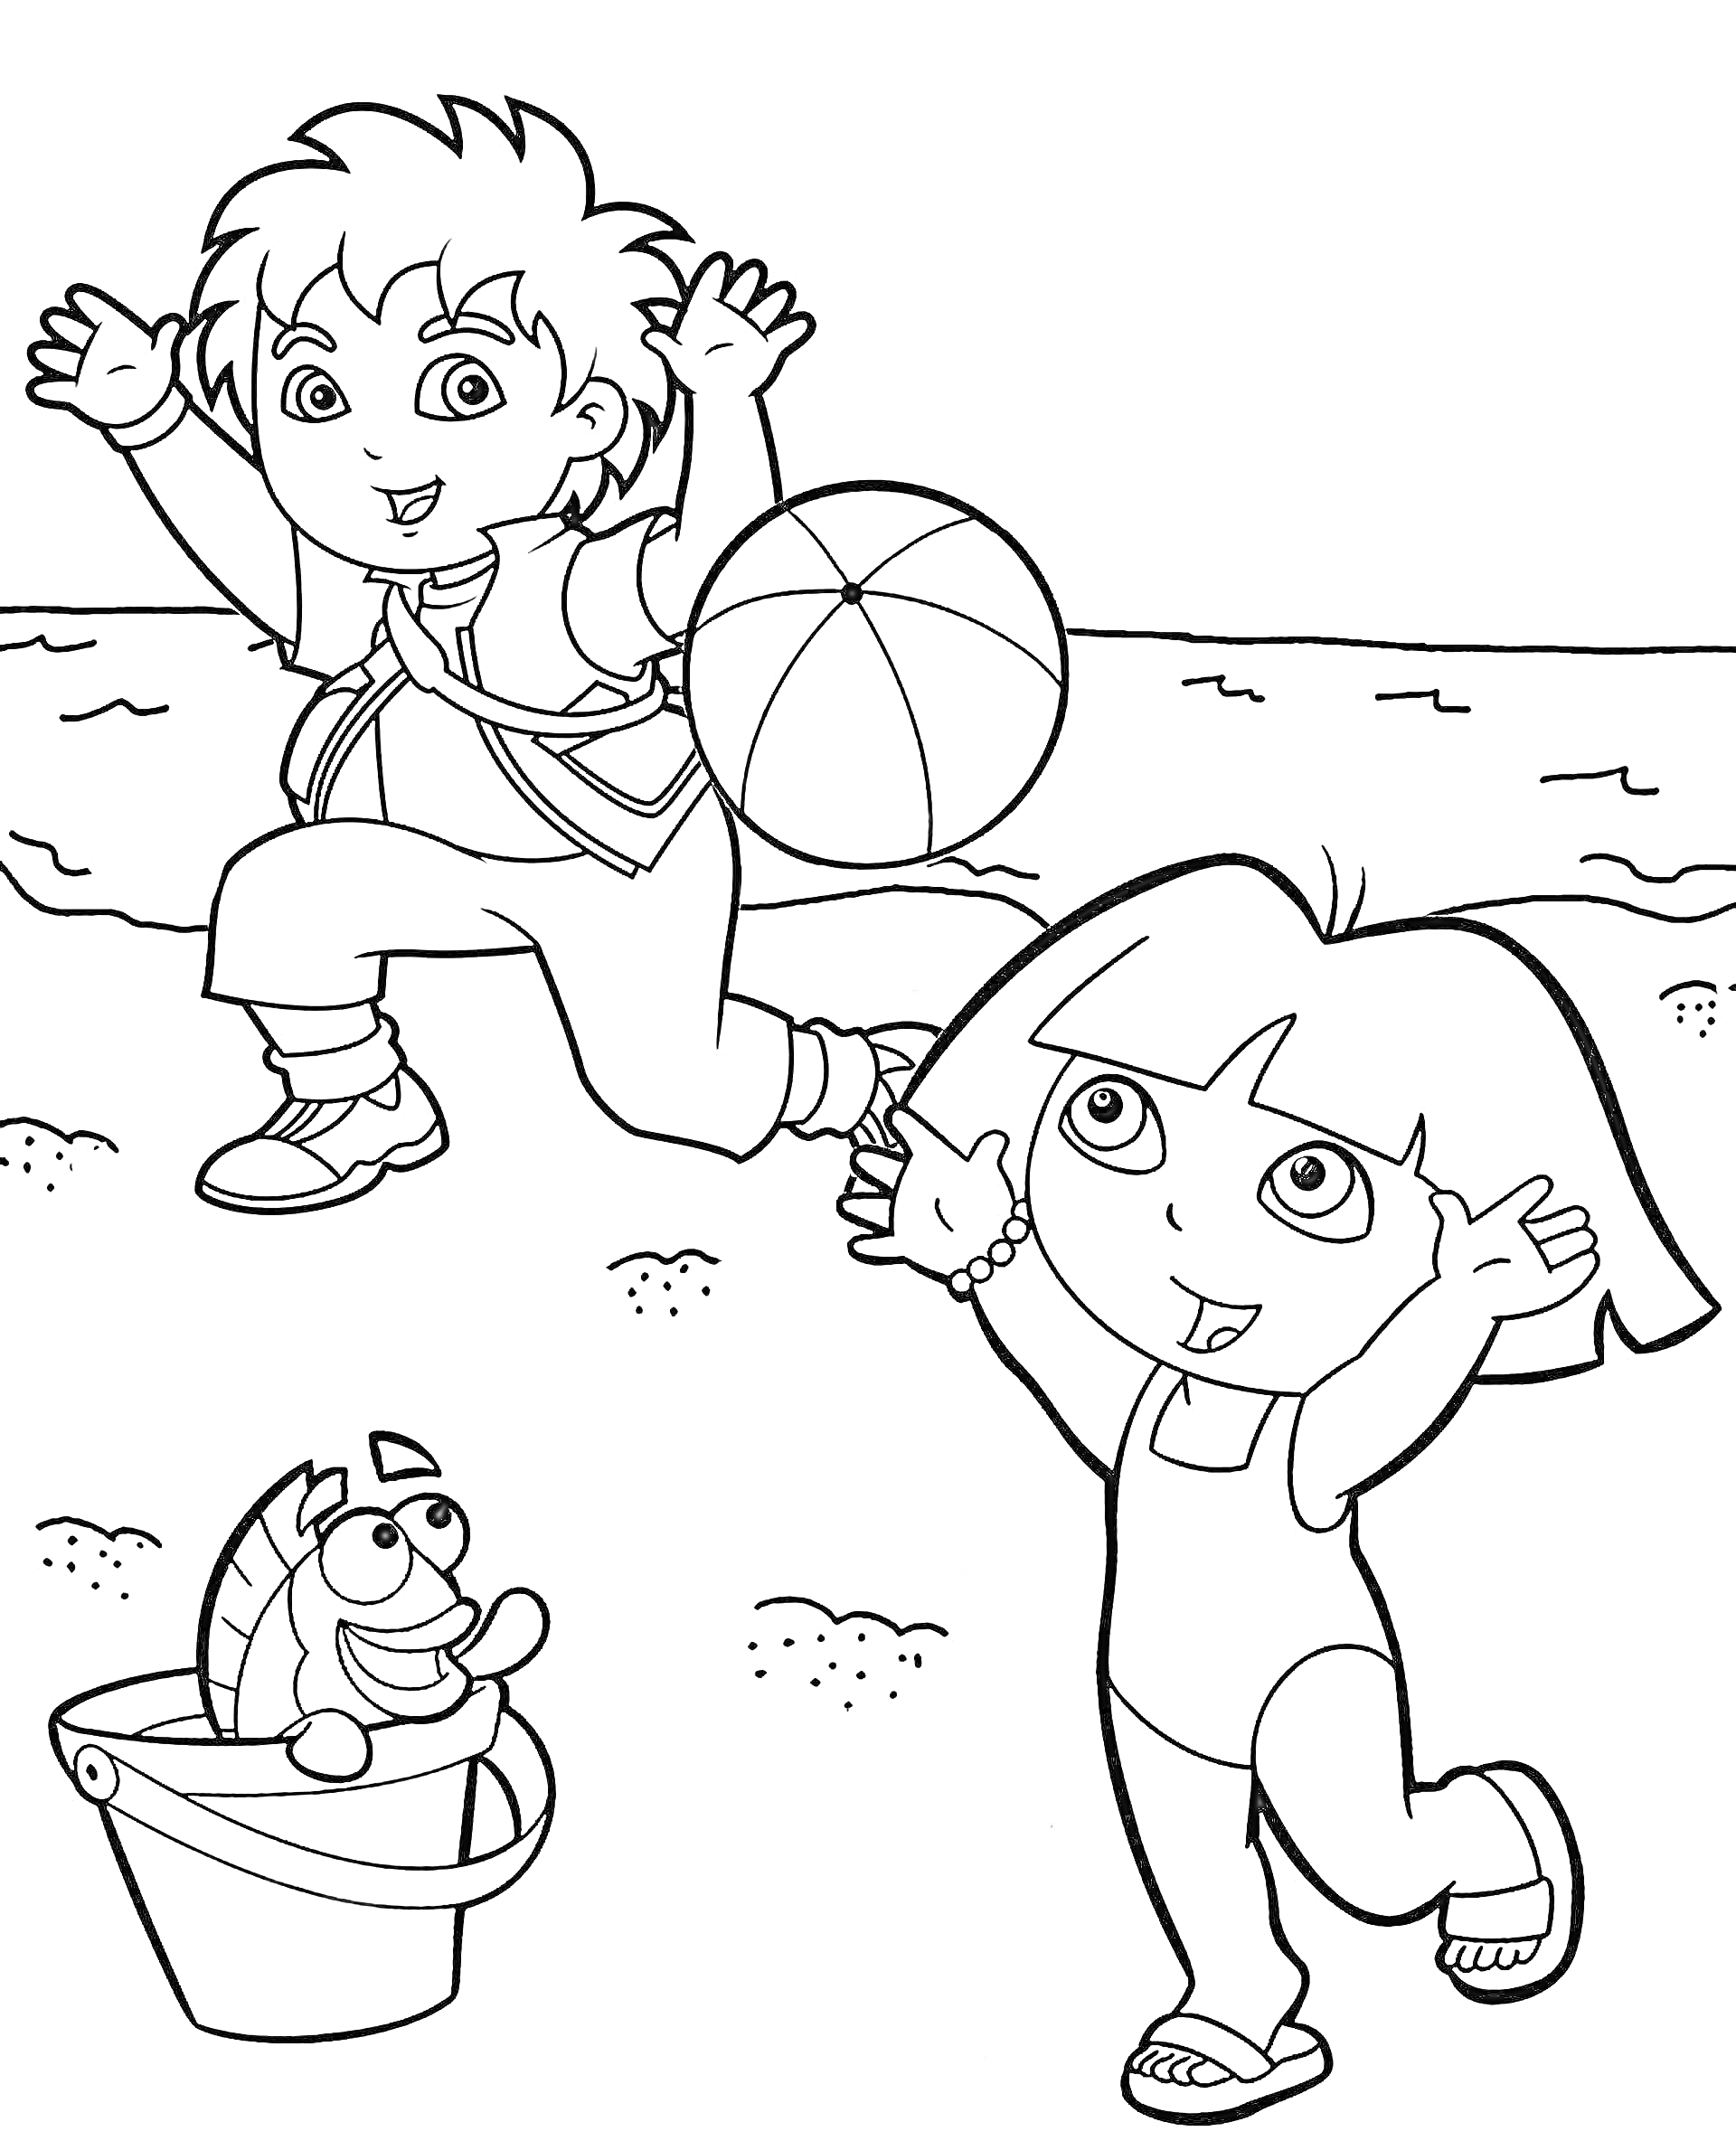 Раскраска Диего и девочка играют на пляже с мячом, рядом ведро с игрушечной рыбкой